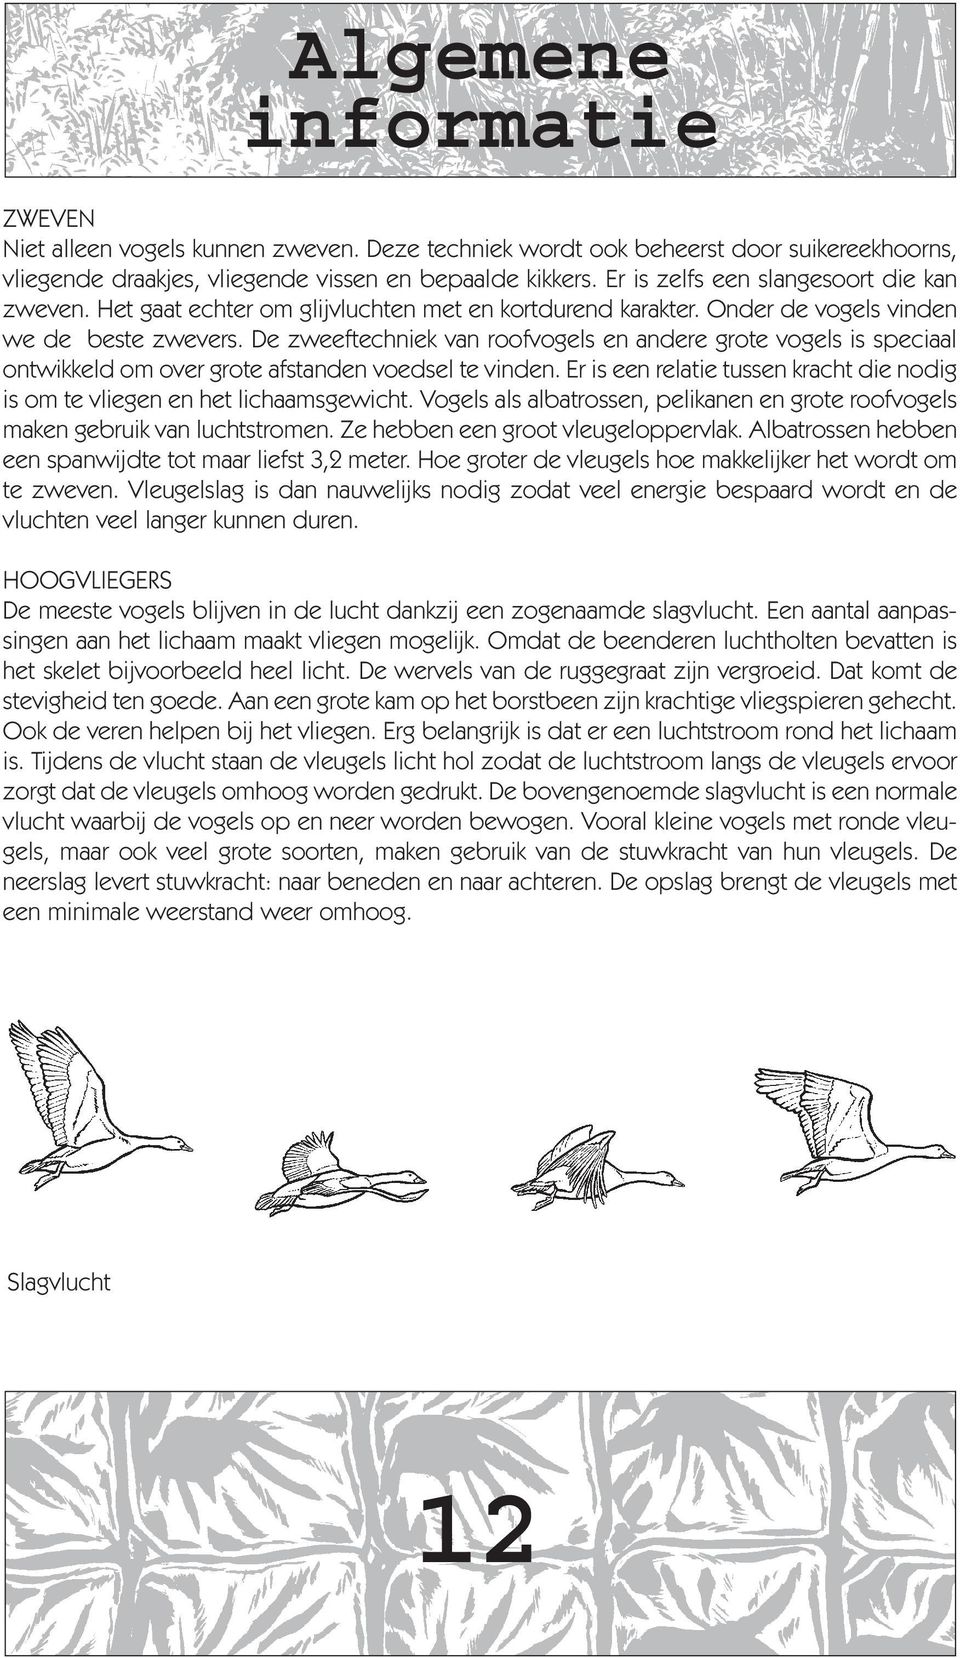 De zweeftechniek van roofvogels en andere grote vogels is speciaal ontwikkeld om over grote afstanden voedsel te vinden.